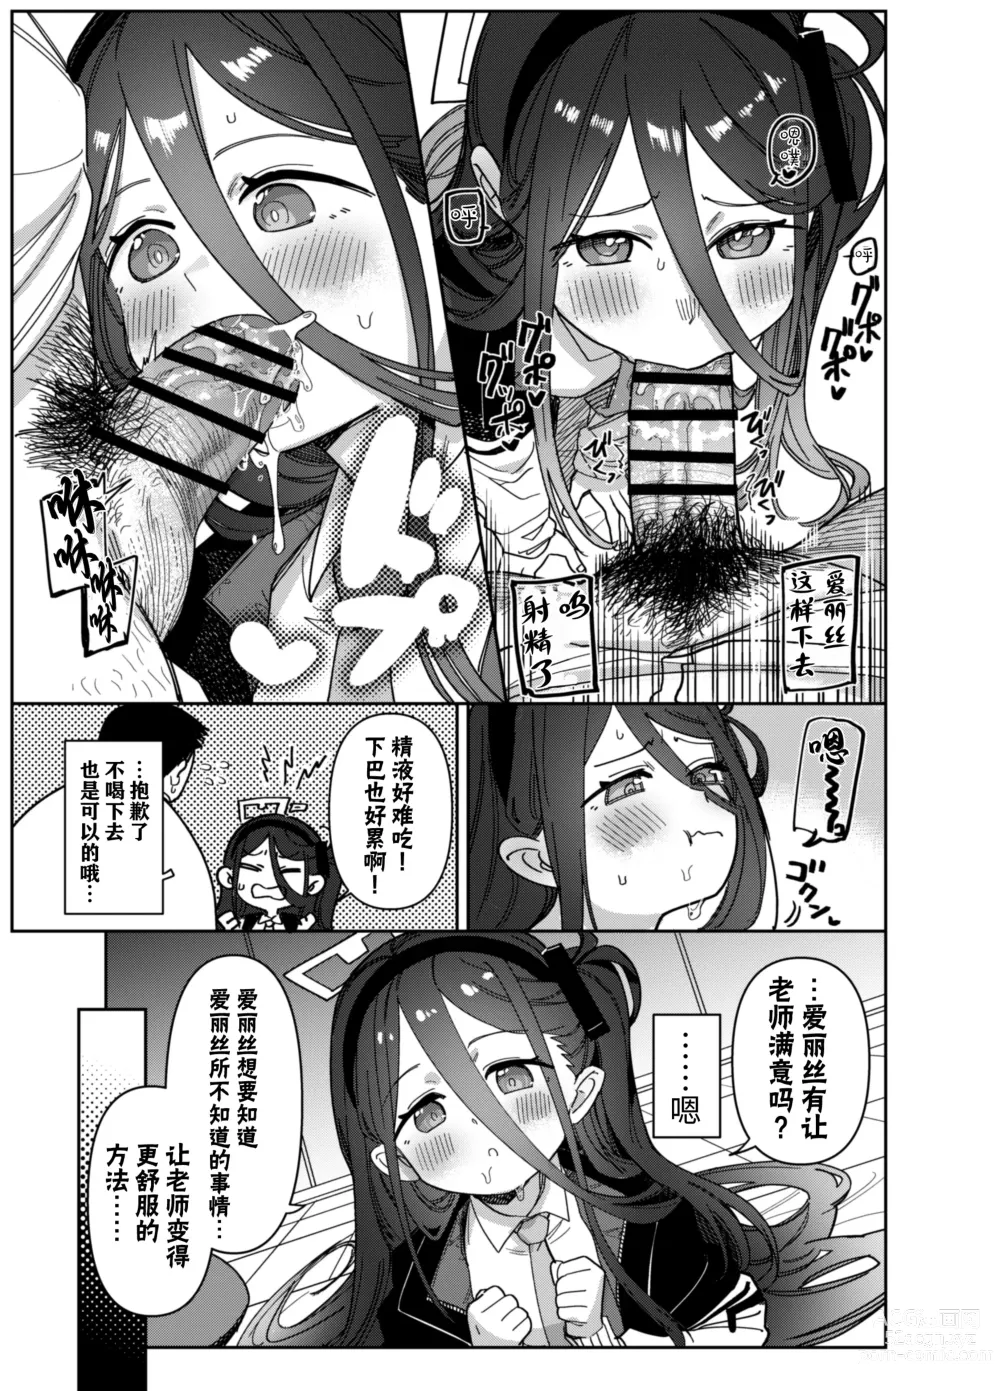 Page 10 of doujinshi 由于老师太弱了 爱丽丝来保护好老师!